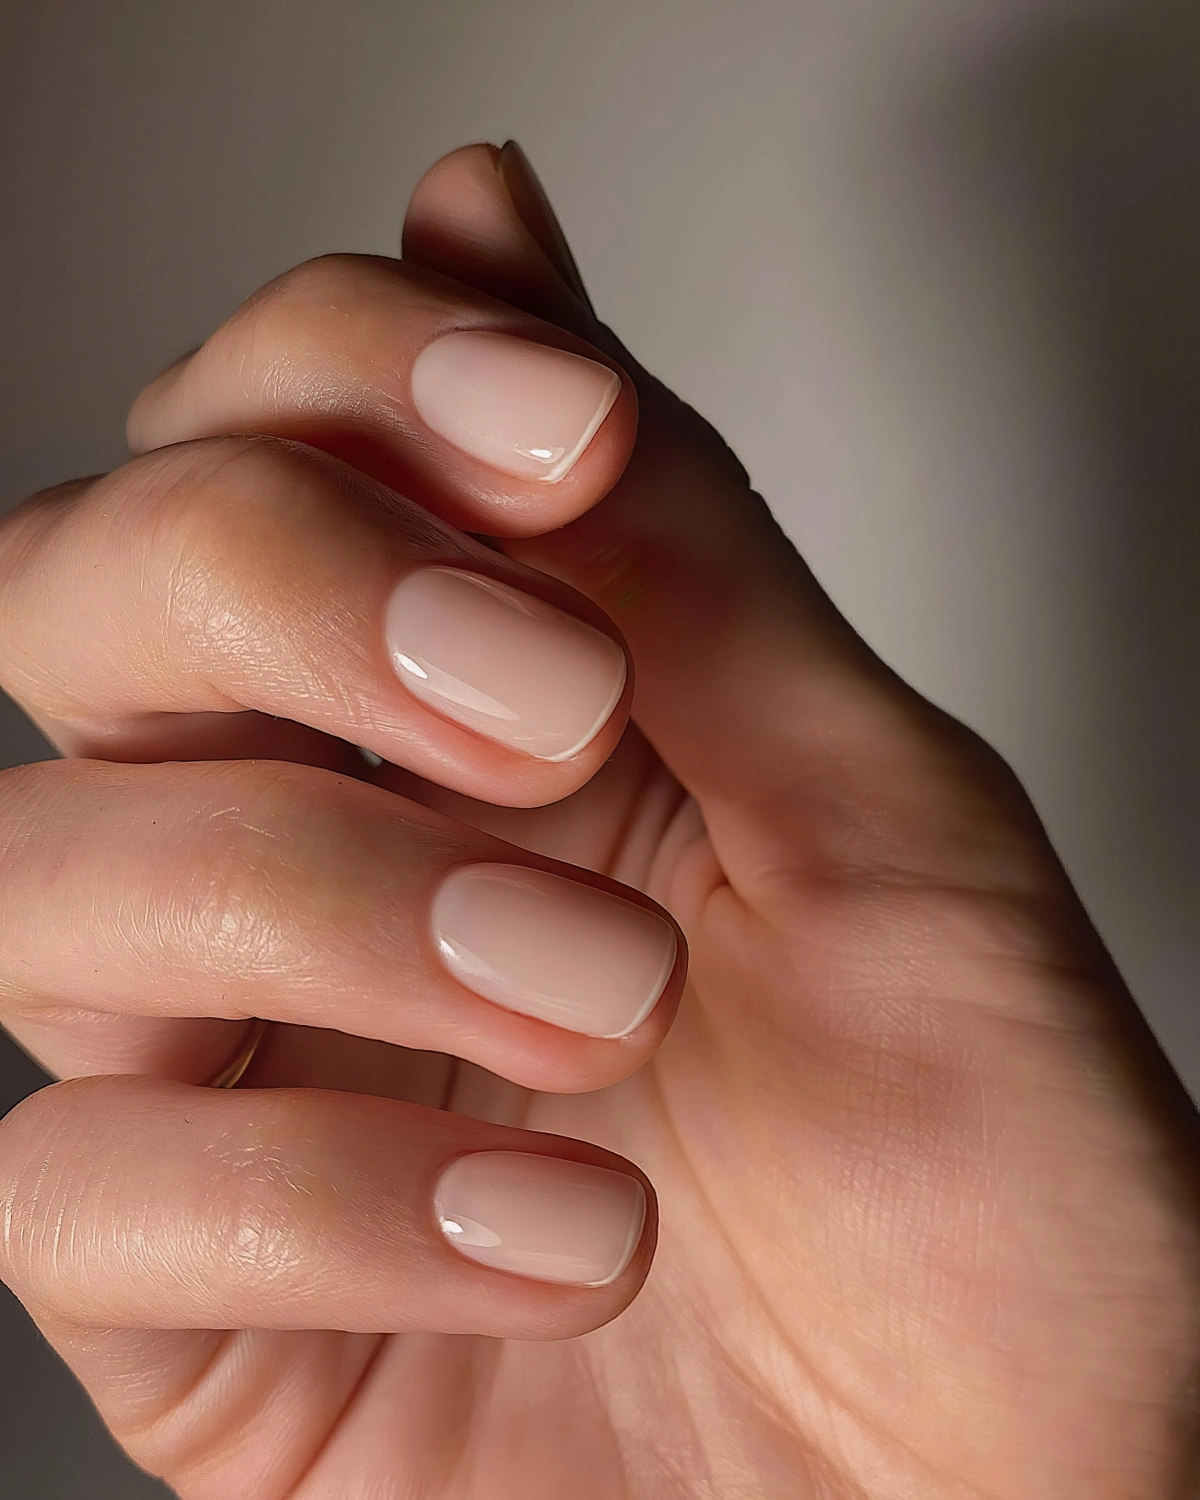 fednude nails ongles naturels base transparente soins doigts sains mains